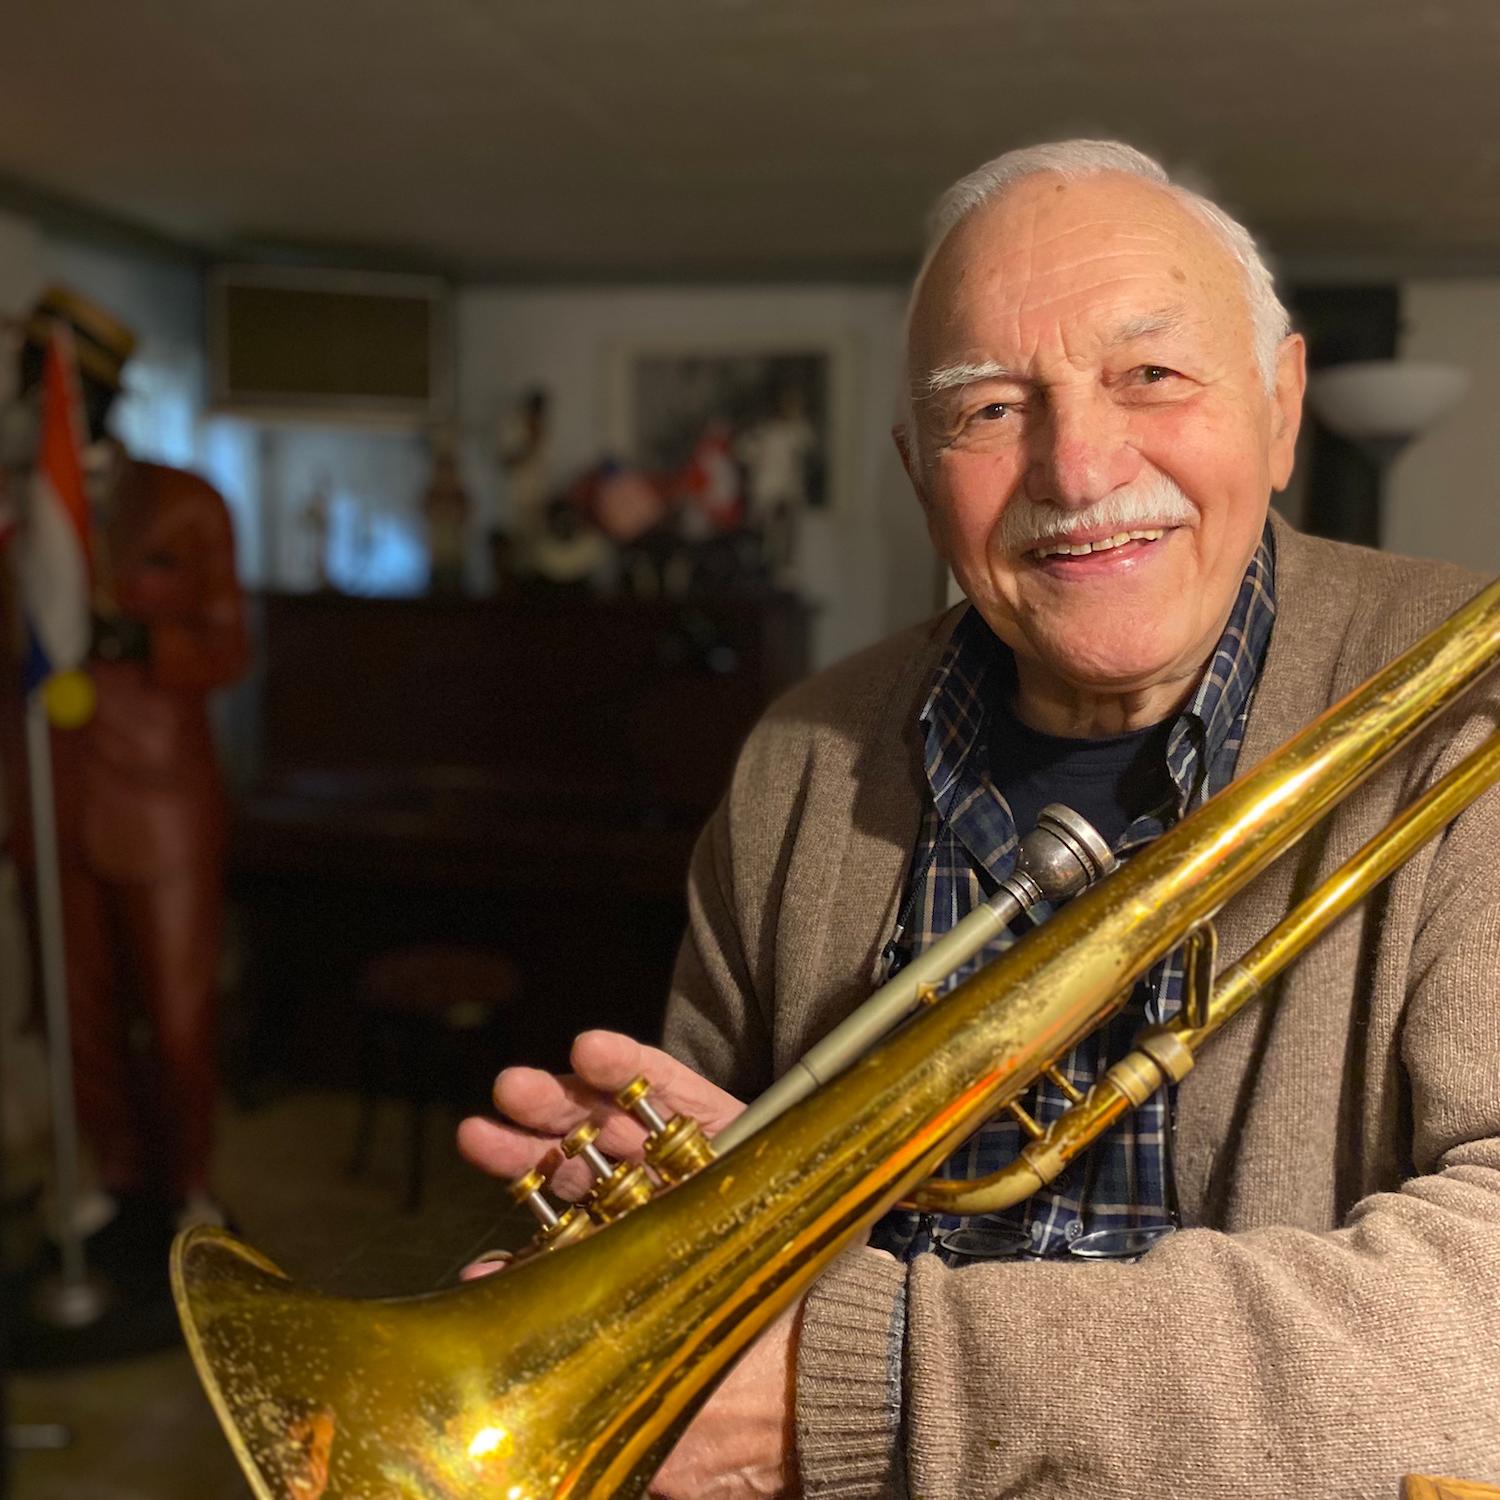 Trompete und Posaune sind seit 70 Jahren seine treuen Begleiterinnen. Zu Konzerten trägt Walter Maaßen einen Hut, um Spenden zu sammeln.